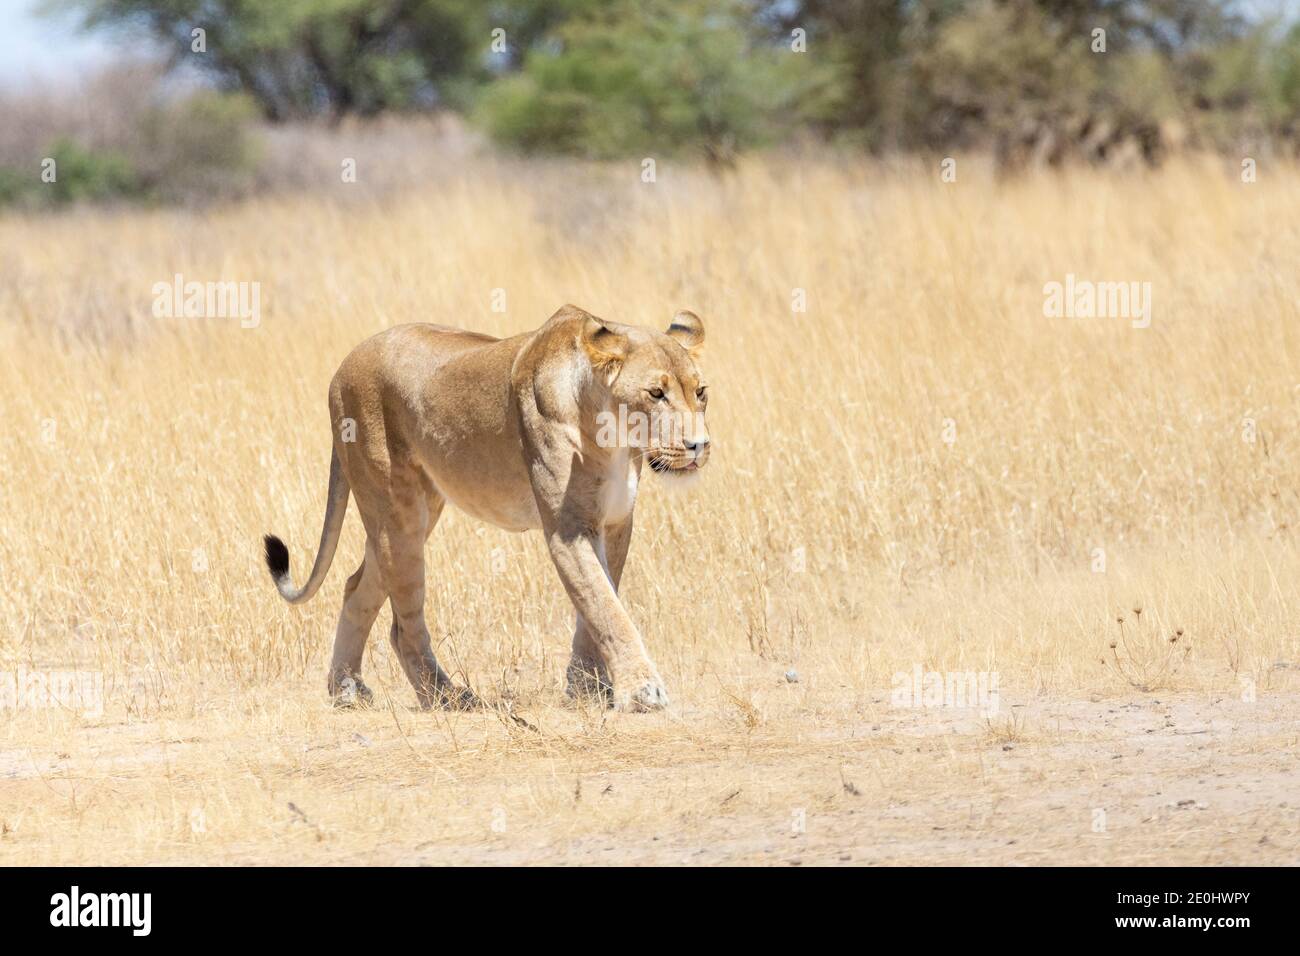 Kalahari Lion (Panthera Leo), Kgalagadi Transfrontier Park, Kalahari, Northern Cape, South Africa. Lioness walking through Savannah grassland. IUCN Re Stock Photo